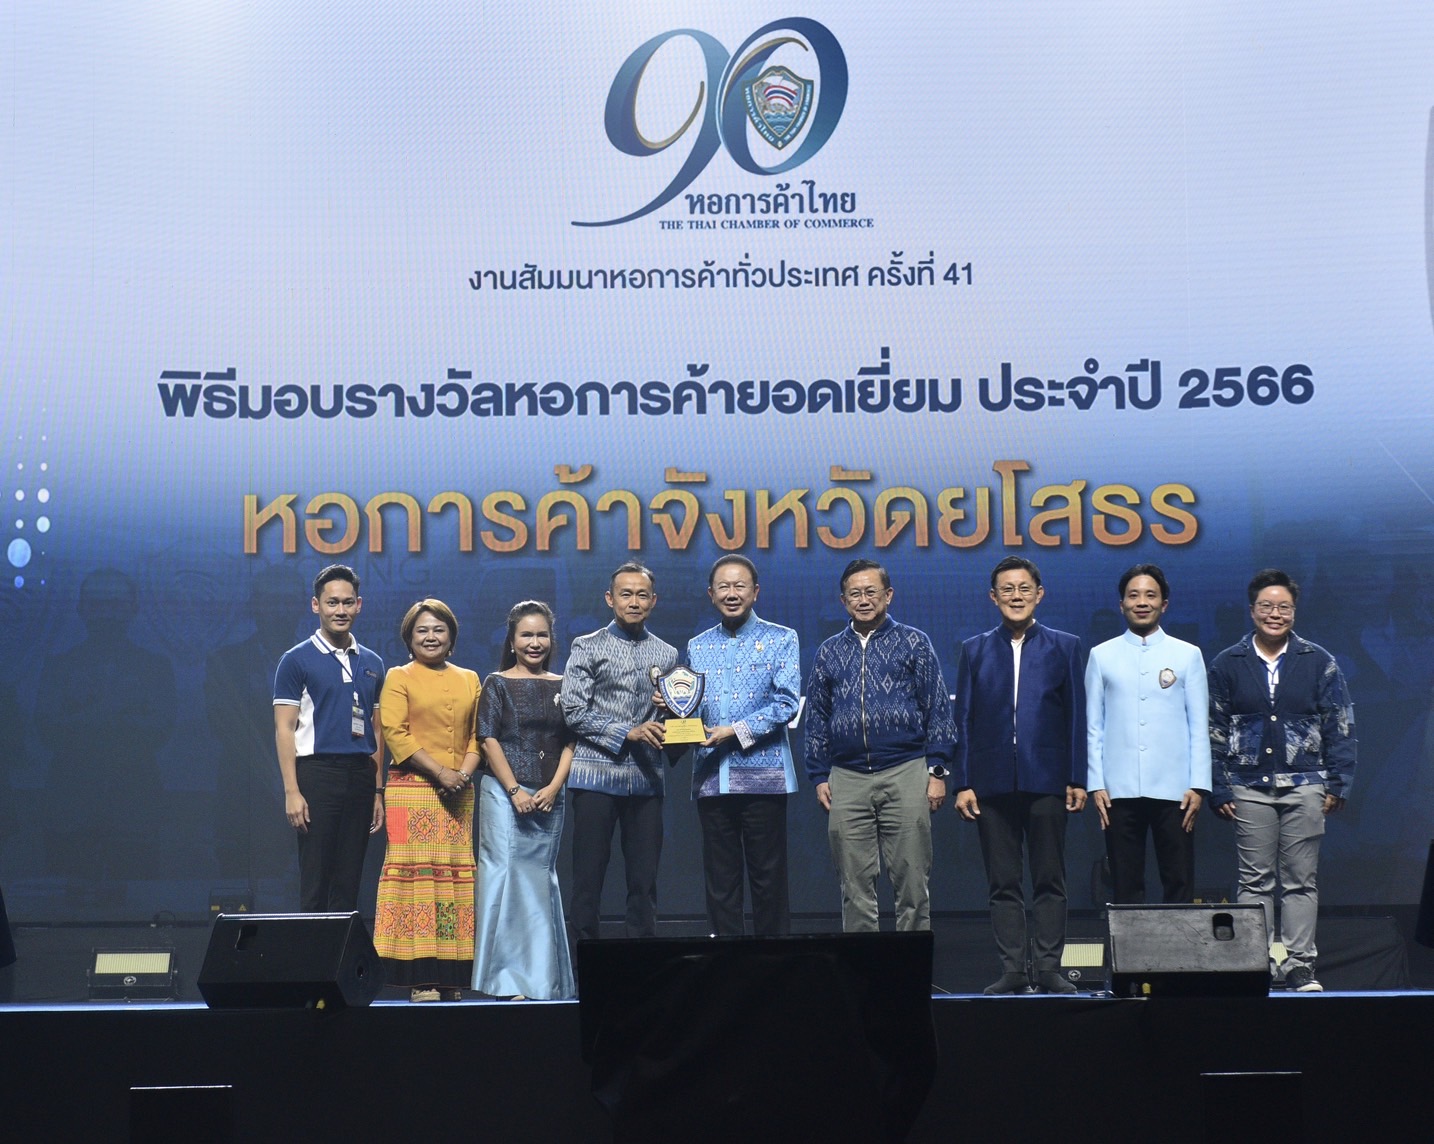 หอการค้าจังหวัดยโสธร รับรางวัล "หอการค้าหอการค้ายอดเยี่ยม ประจำปี 2566" ในงานการสัมมนาหอการค้าทั่วประเทศ ครั้งที่ 41 (90 ปีหอการค้าไทย)